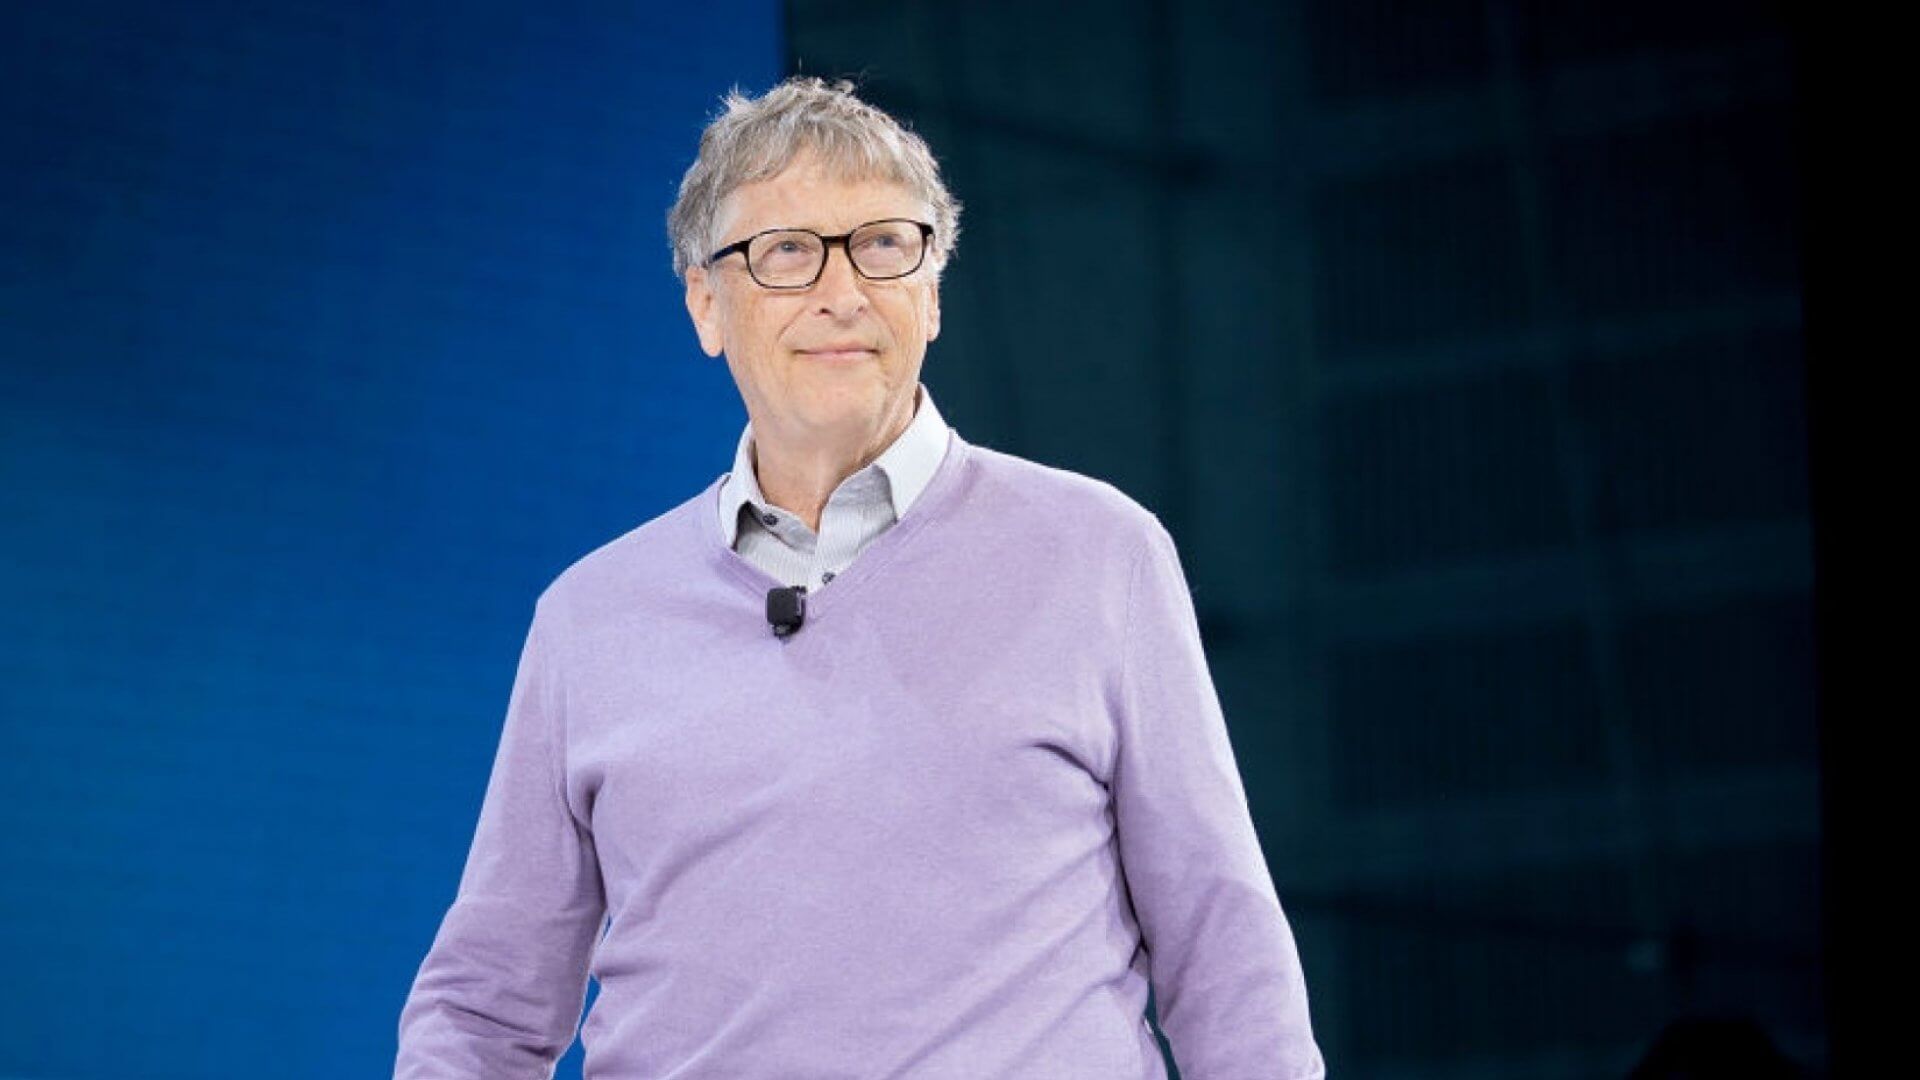 Билл Гейтс Microsoft